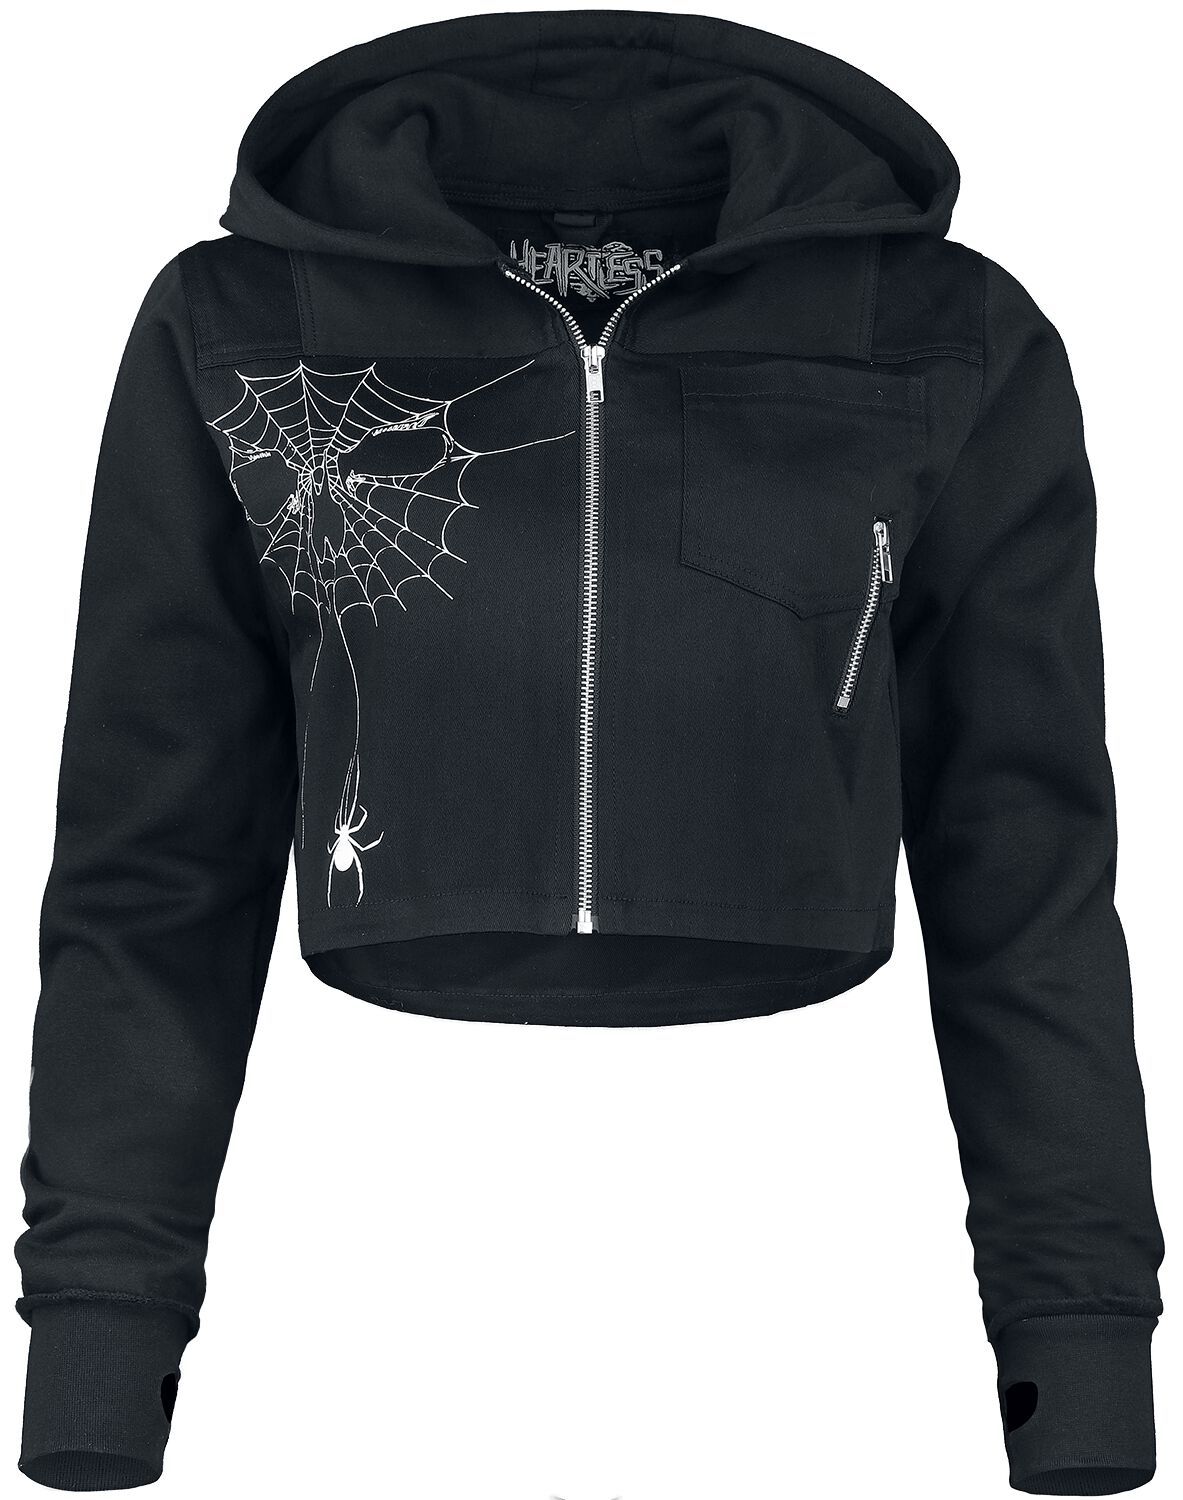 Heartless - Gothic Kapuzenjacke - Widow Maker Jacket - S bis XXL - für Damen - Größe L - schwarz